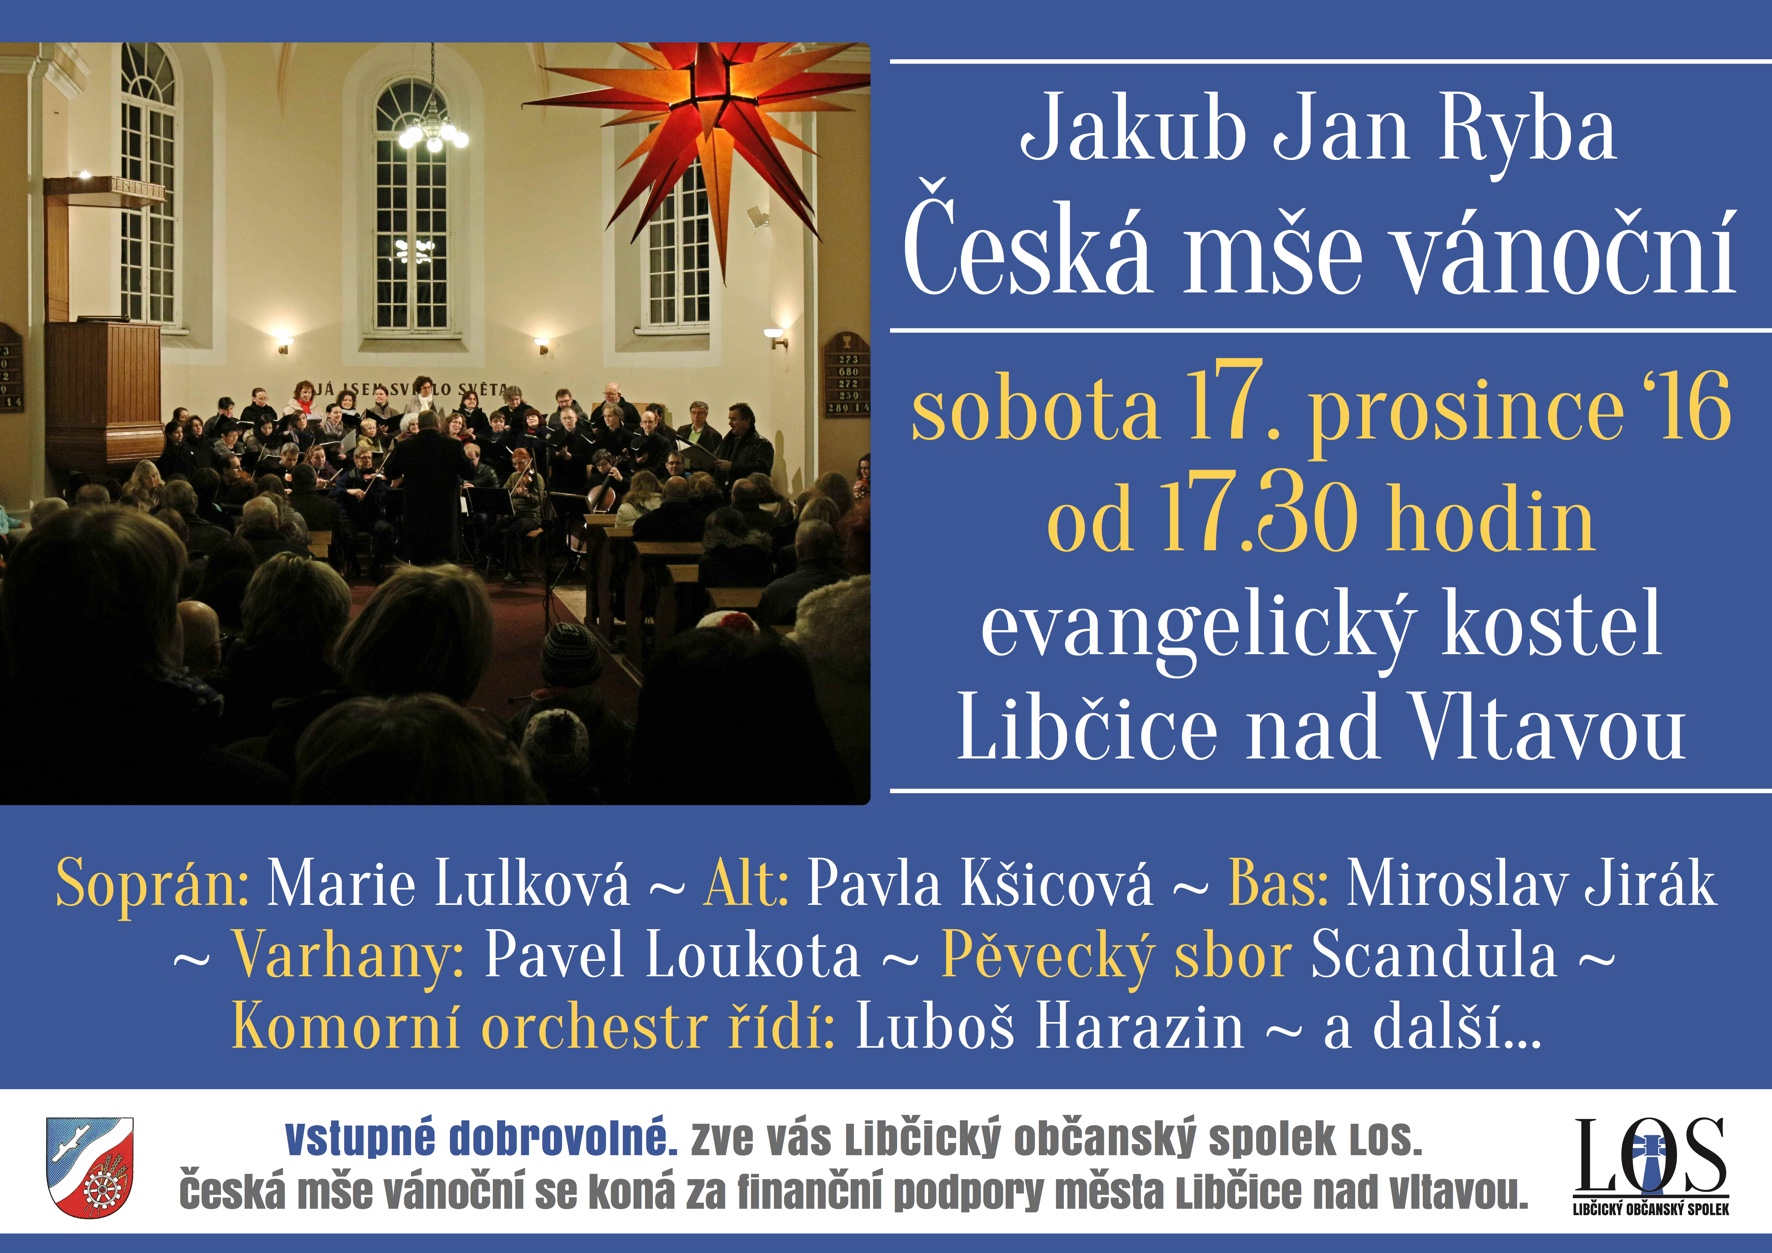 Česká mše vánoční Jakuba Jana Ryby 2016